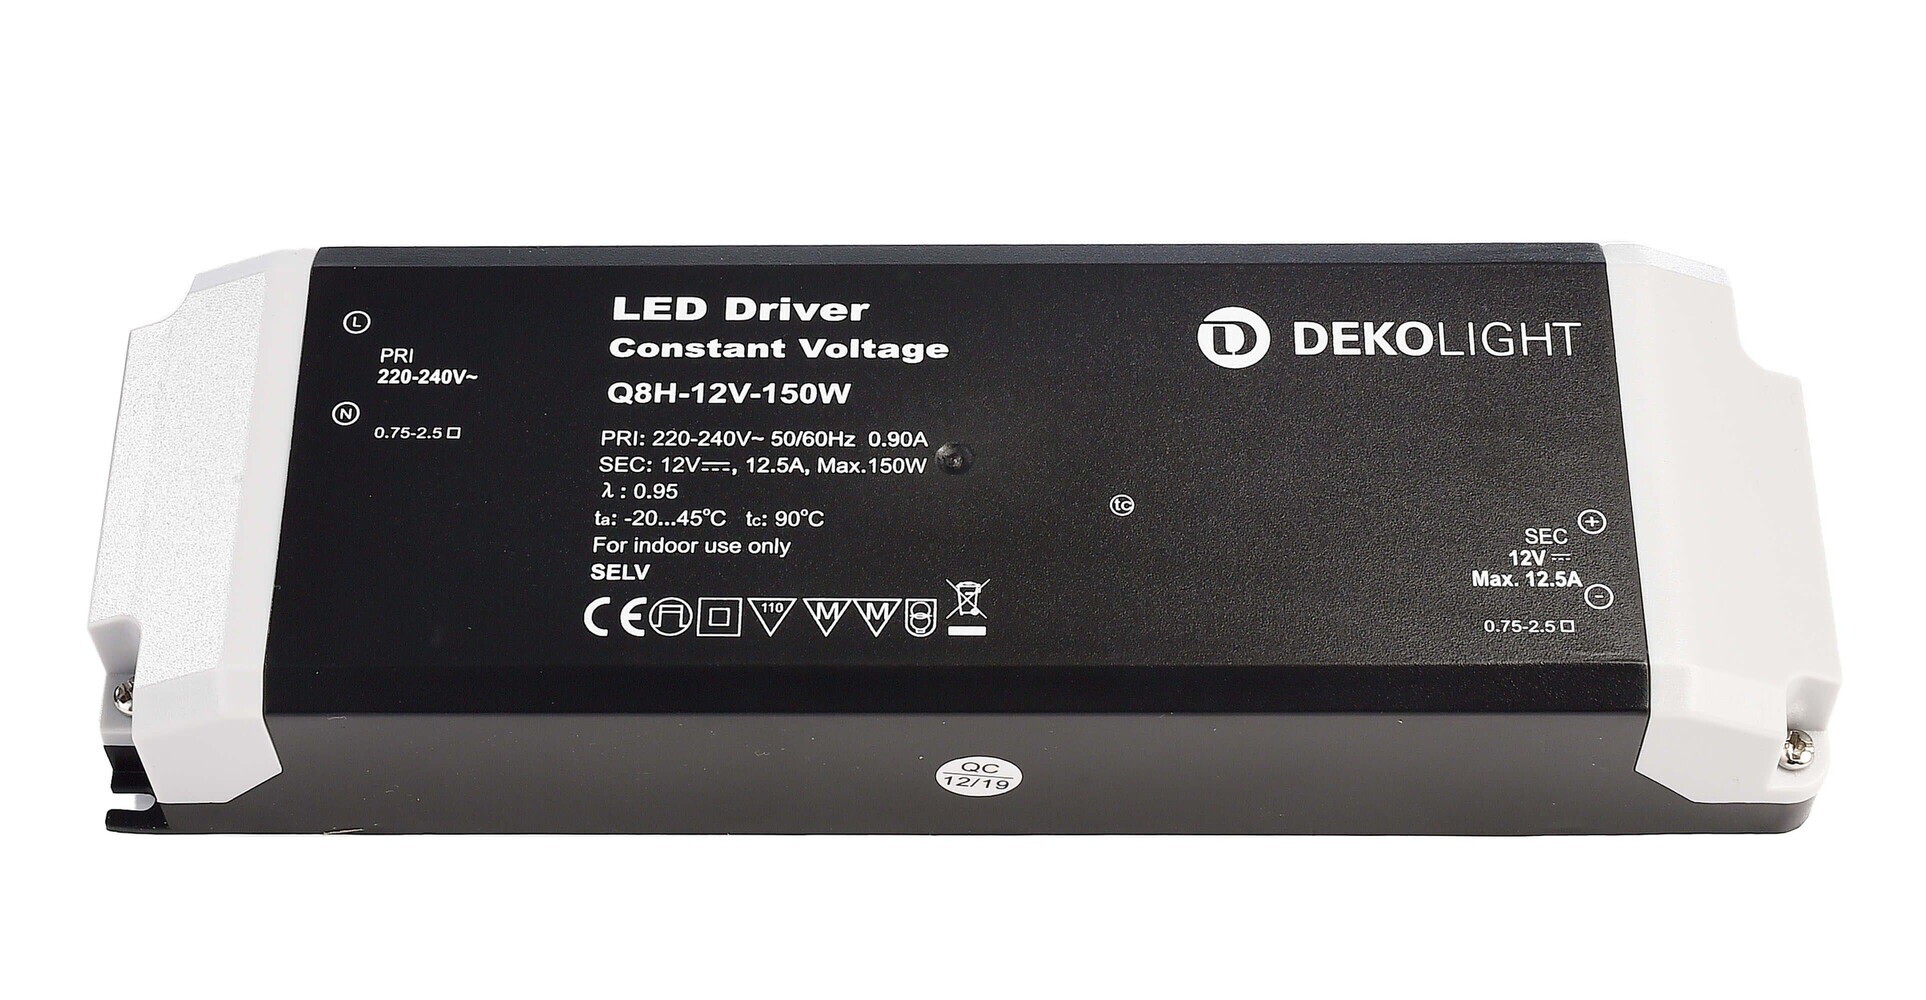 Hochwertiges LED Netzteil der Marke Deko-Light in modernem Design